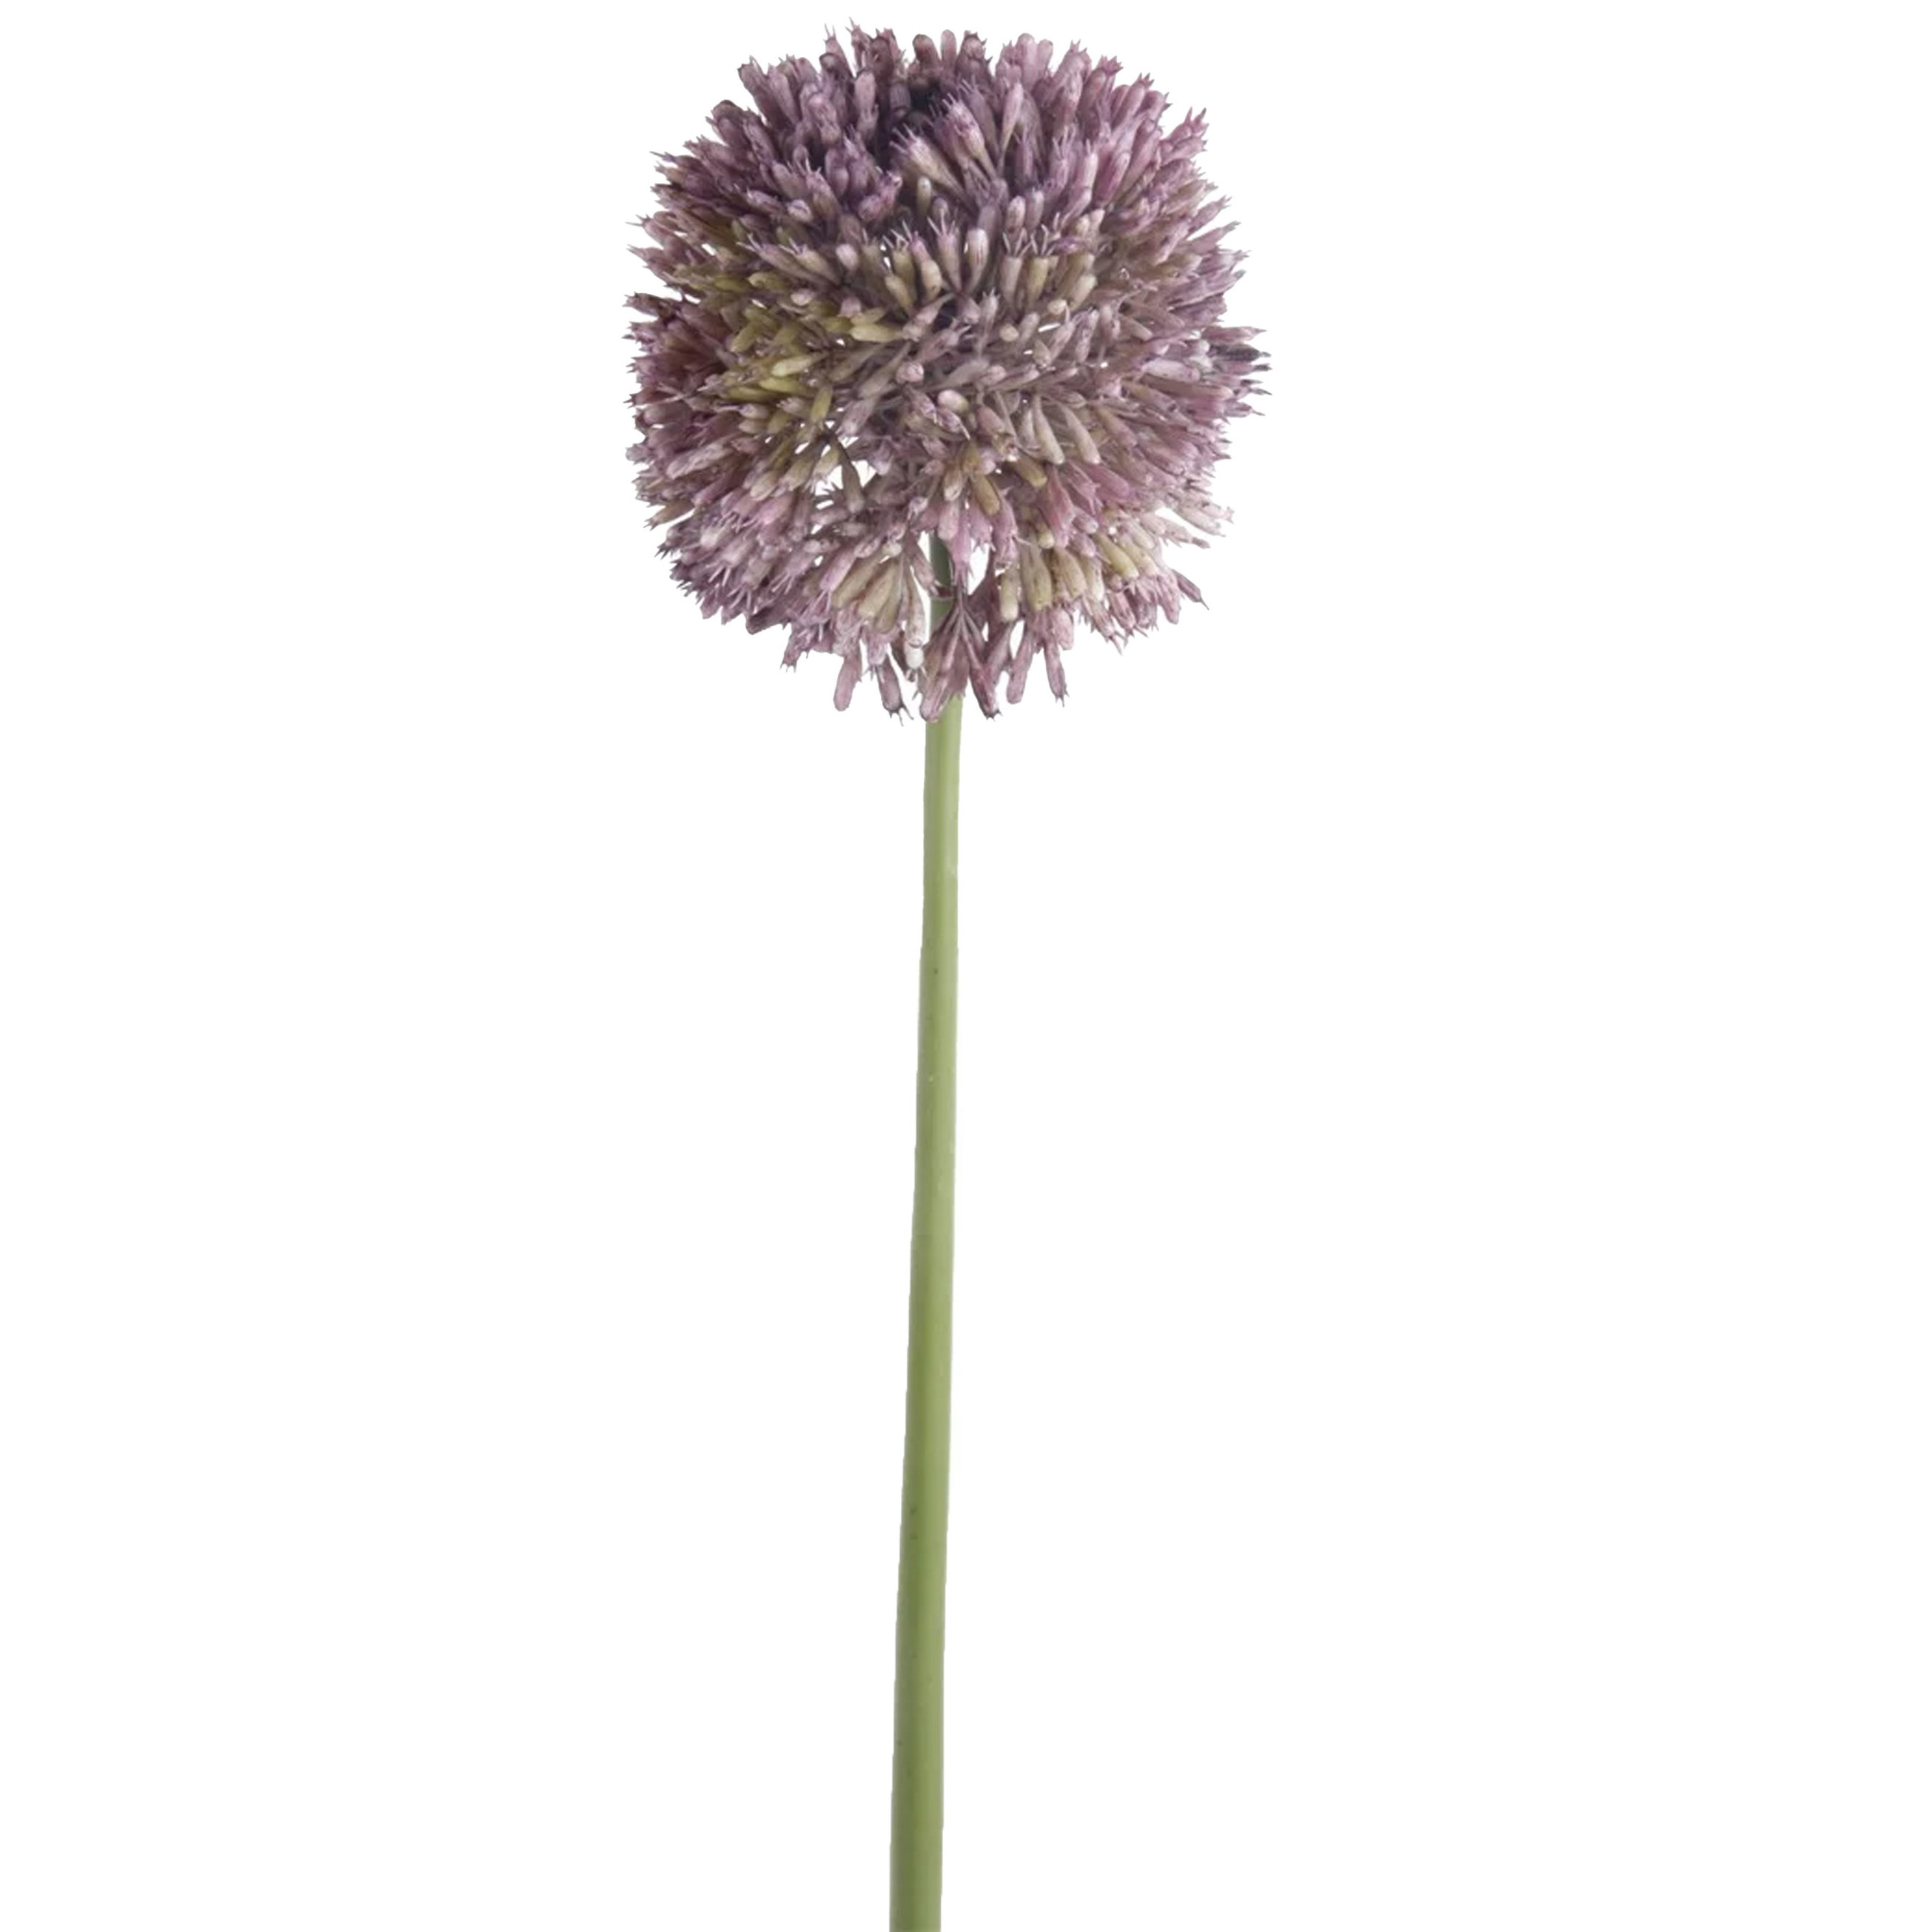 Allium-Sierui kunstbloem losse steel lila paars 65 cm Natuurlijke uitstraling